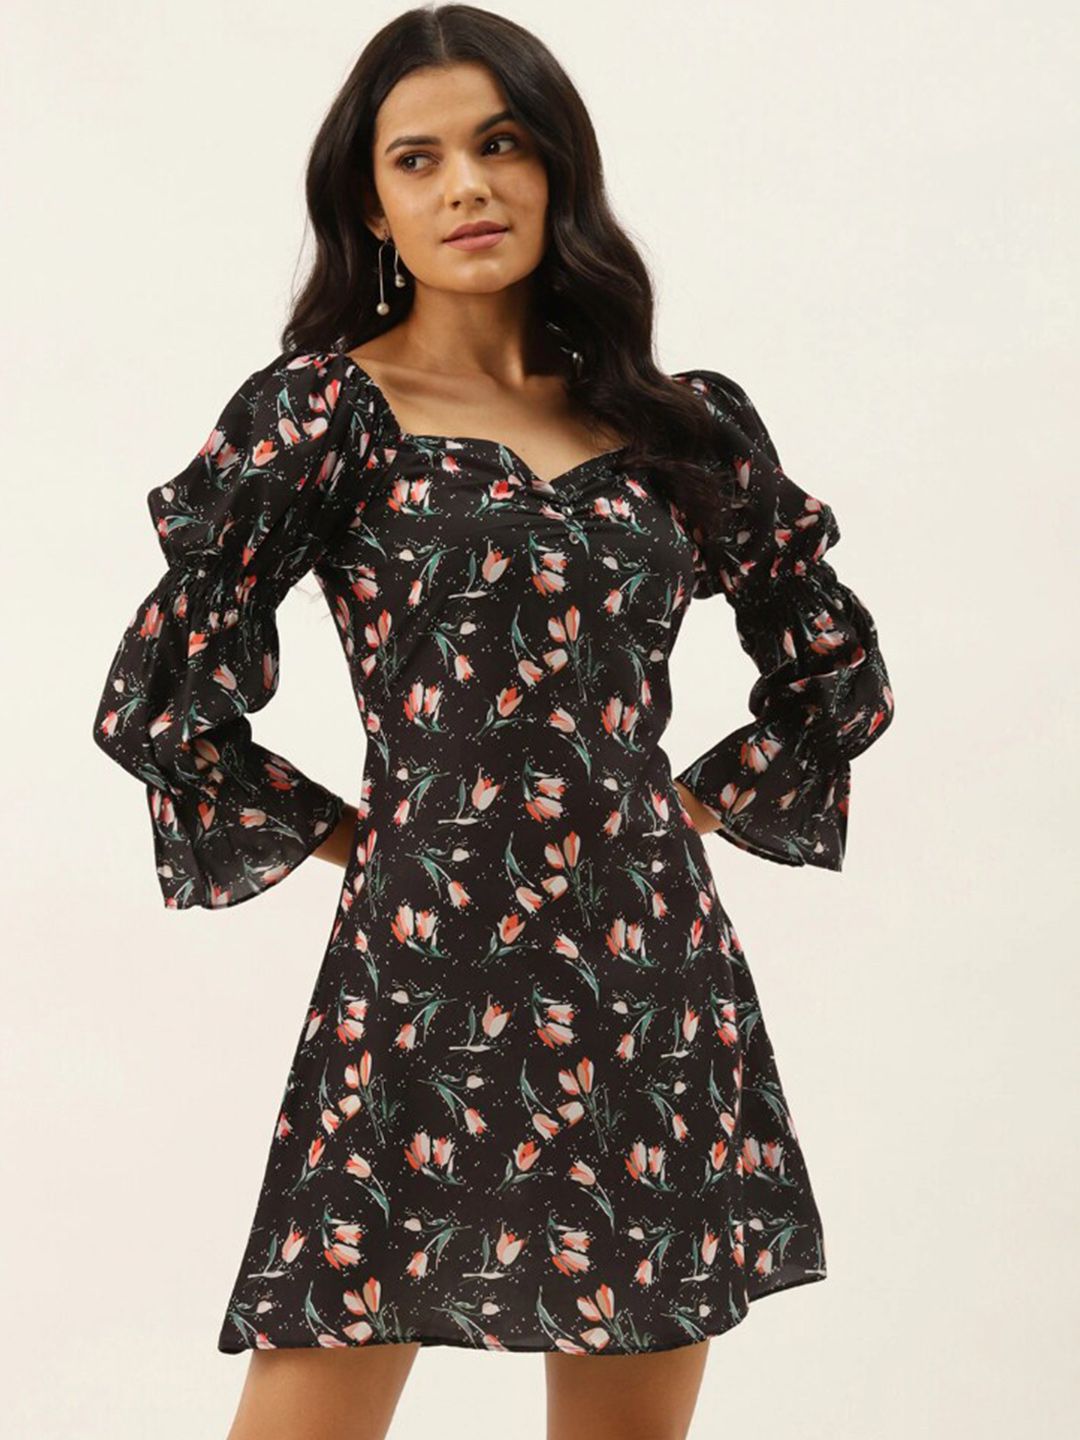 shiloh Black Floral Dress Price in India